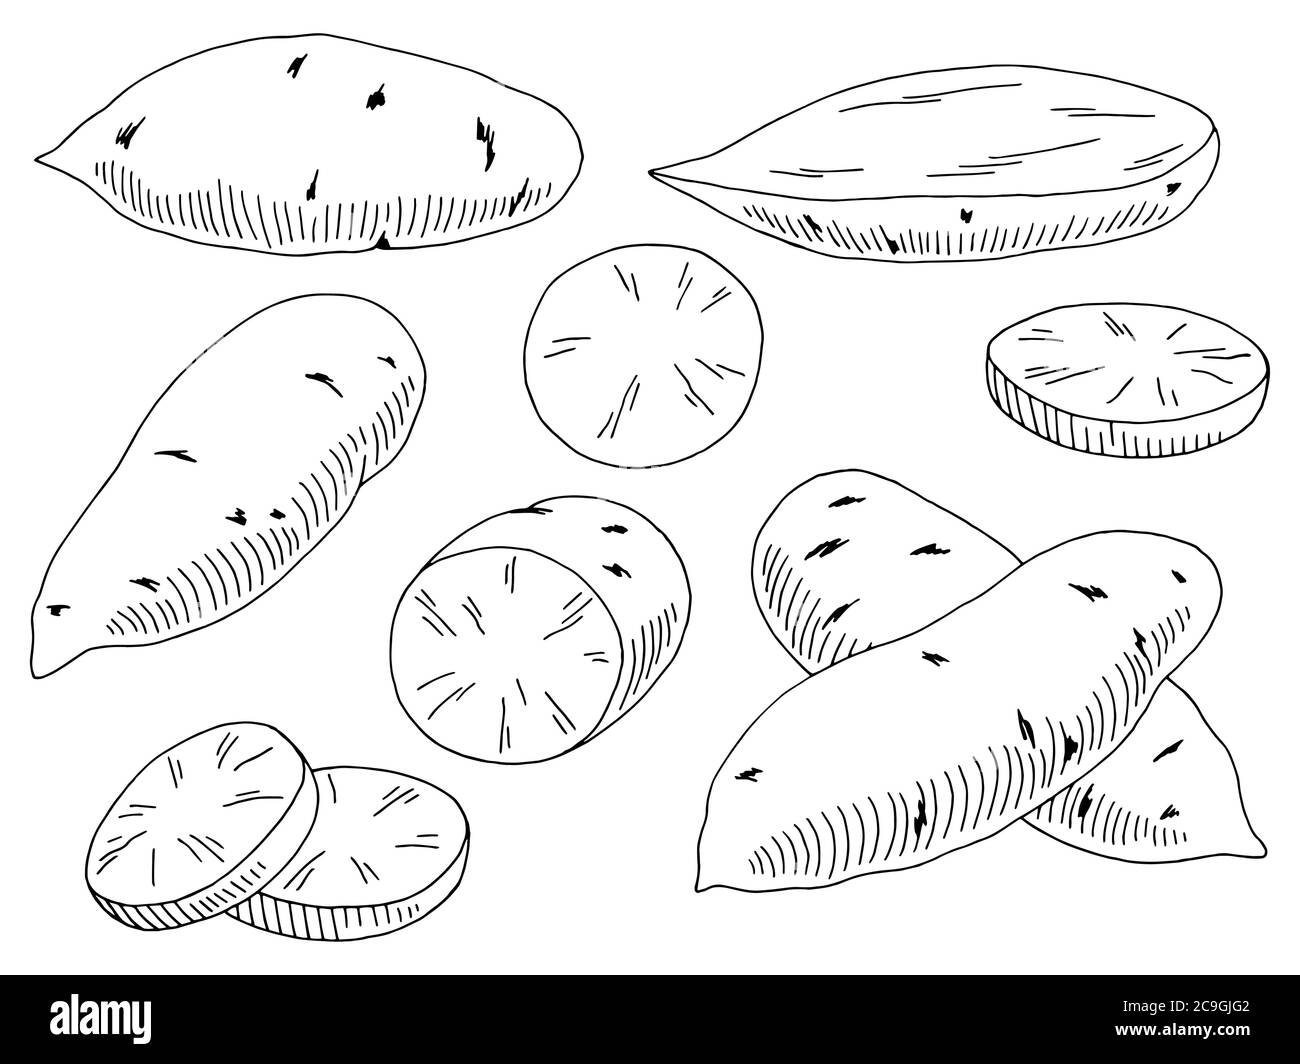 Süßkartoffel Gemüse Grafik schwarz weiß isoliert Skizze Illustration Vektor Stock Vektor